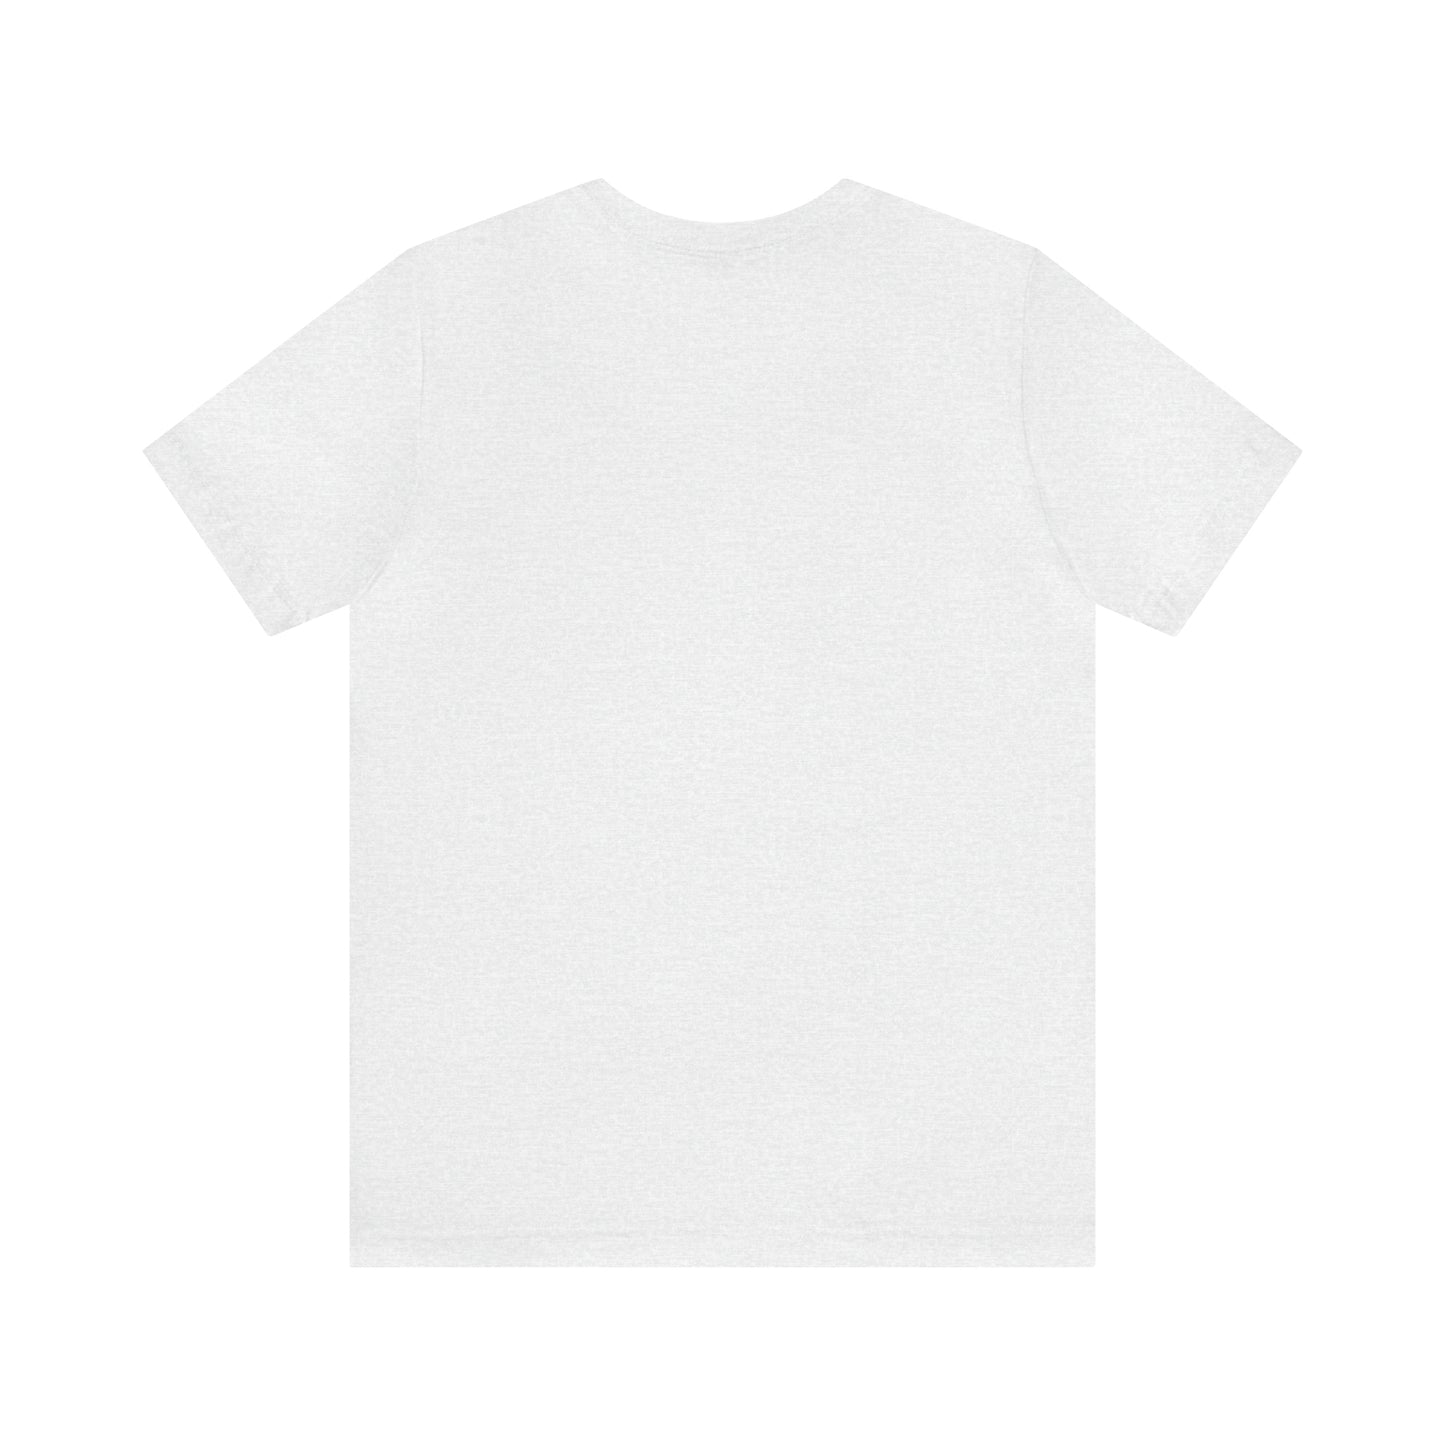 Harvard, Mass Pickleball Short Sleeve T-Shirt